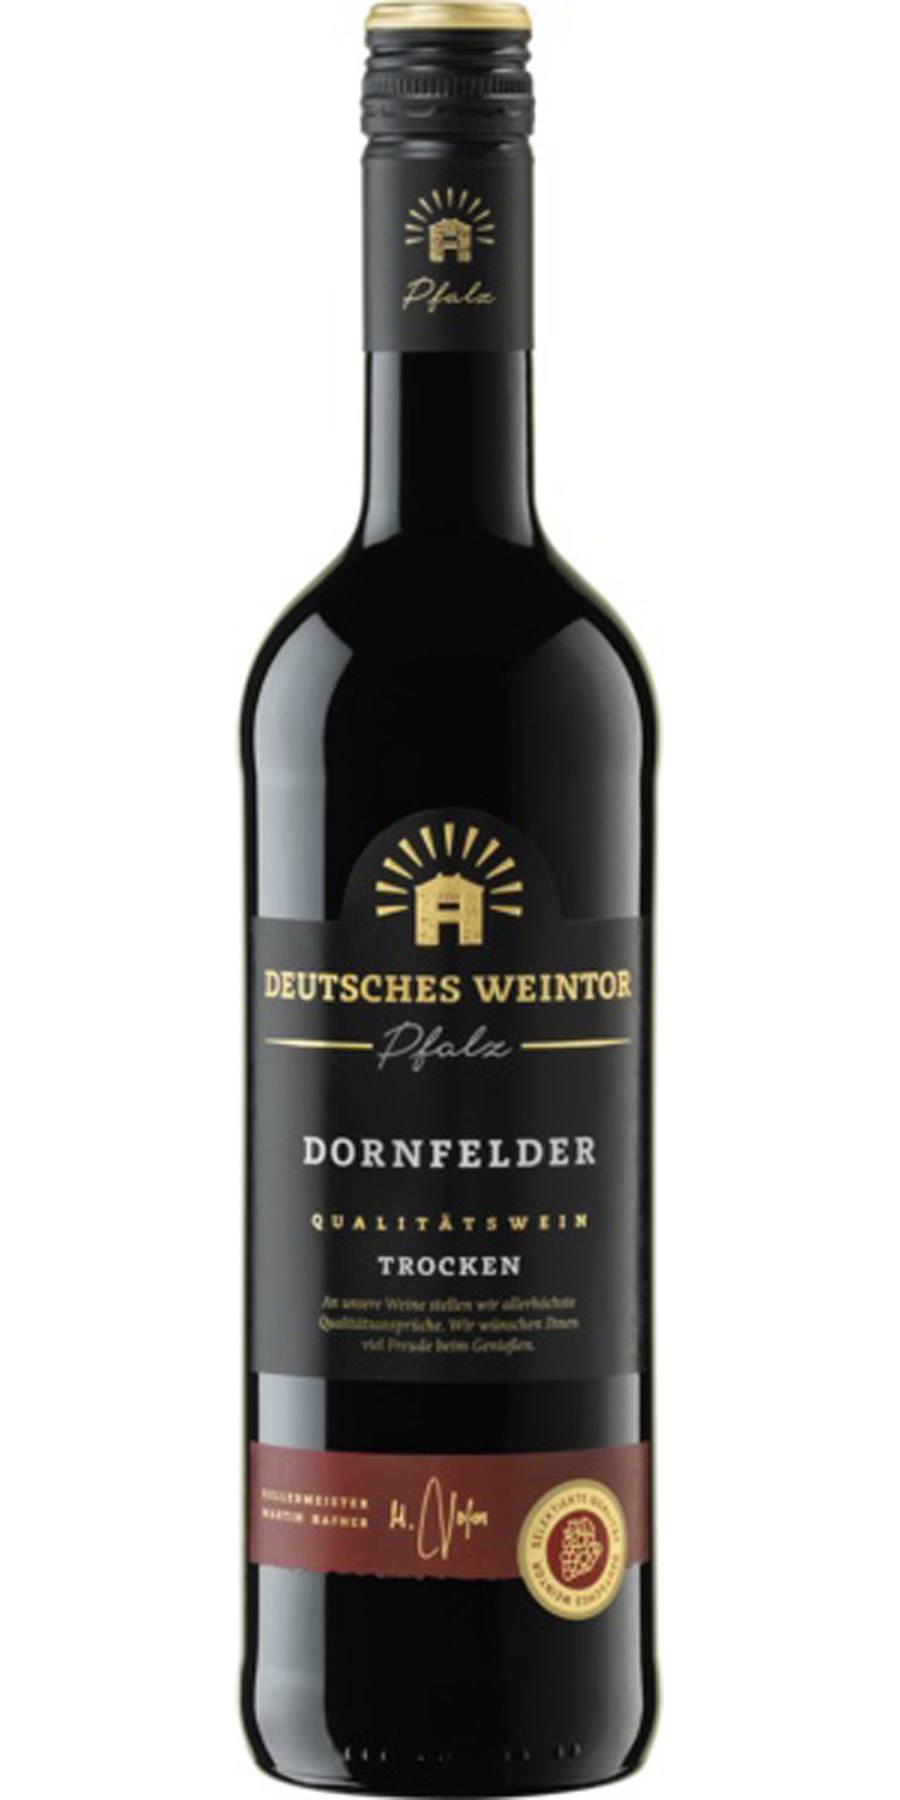 Deutsches Weintor, Dornfelder trocken, Pfalz QbA